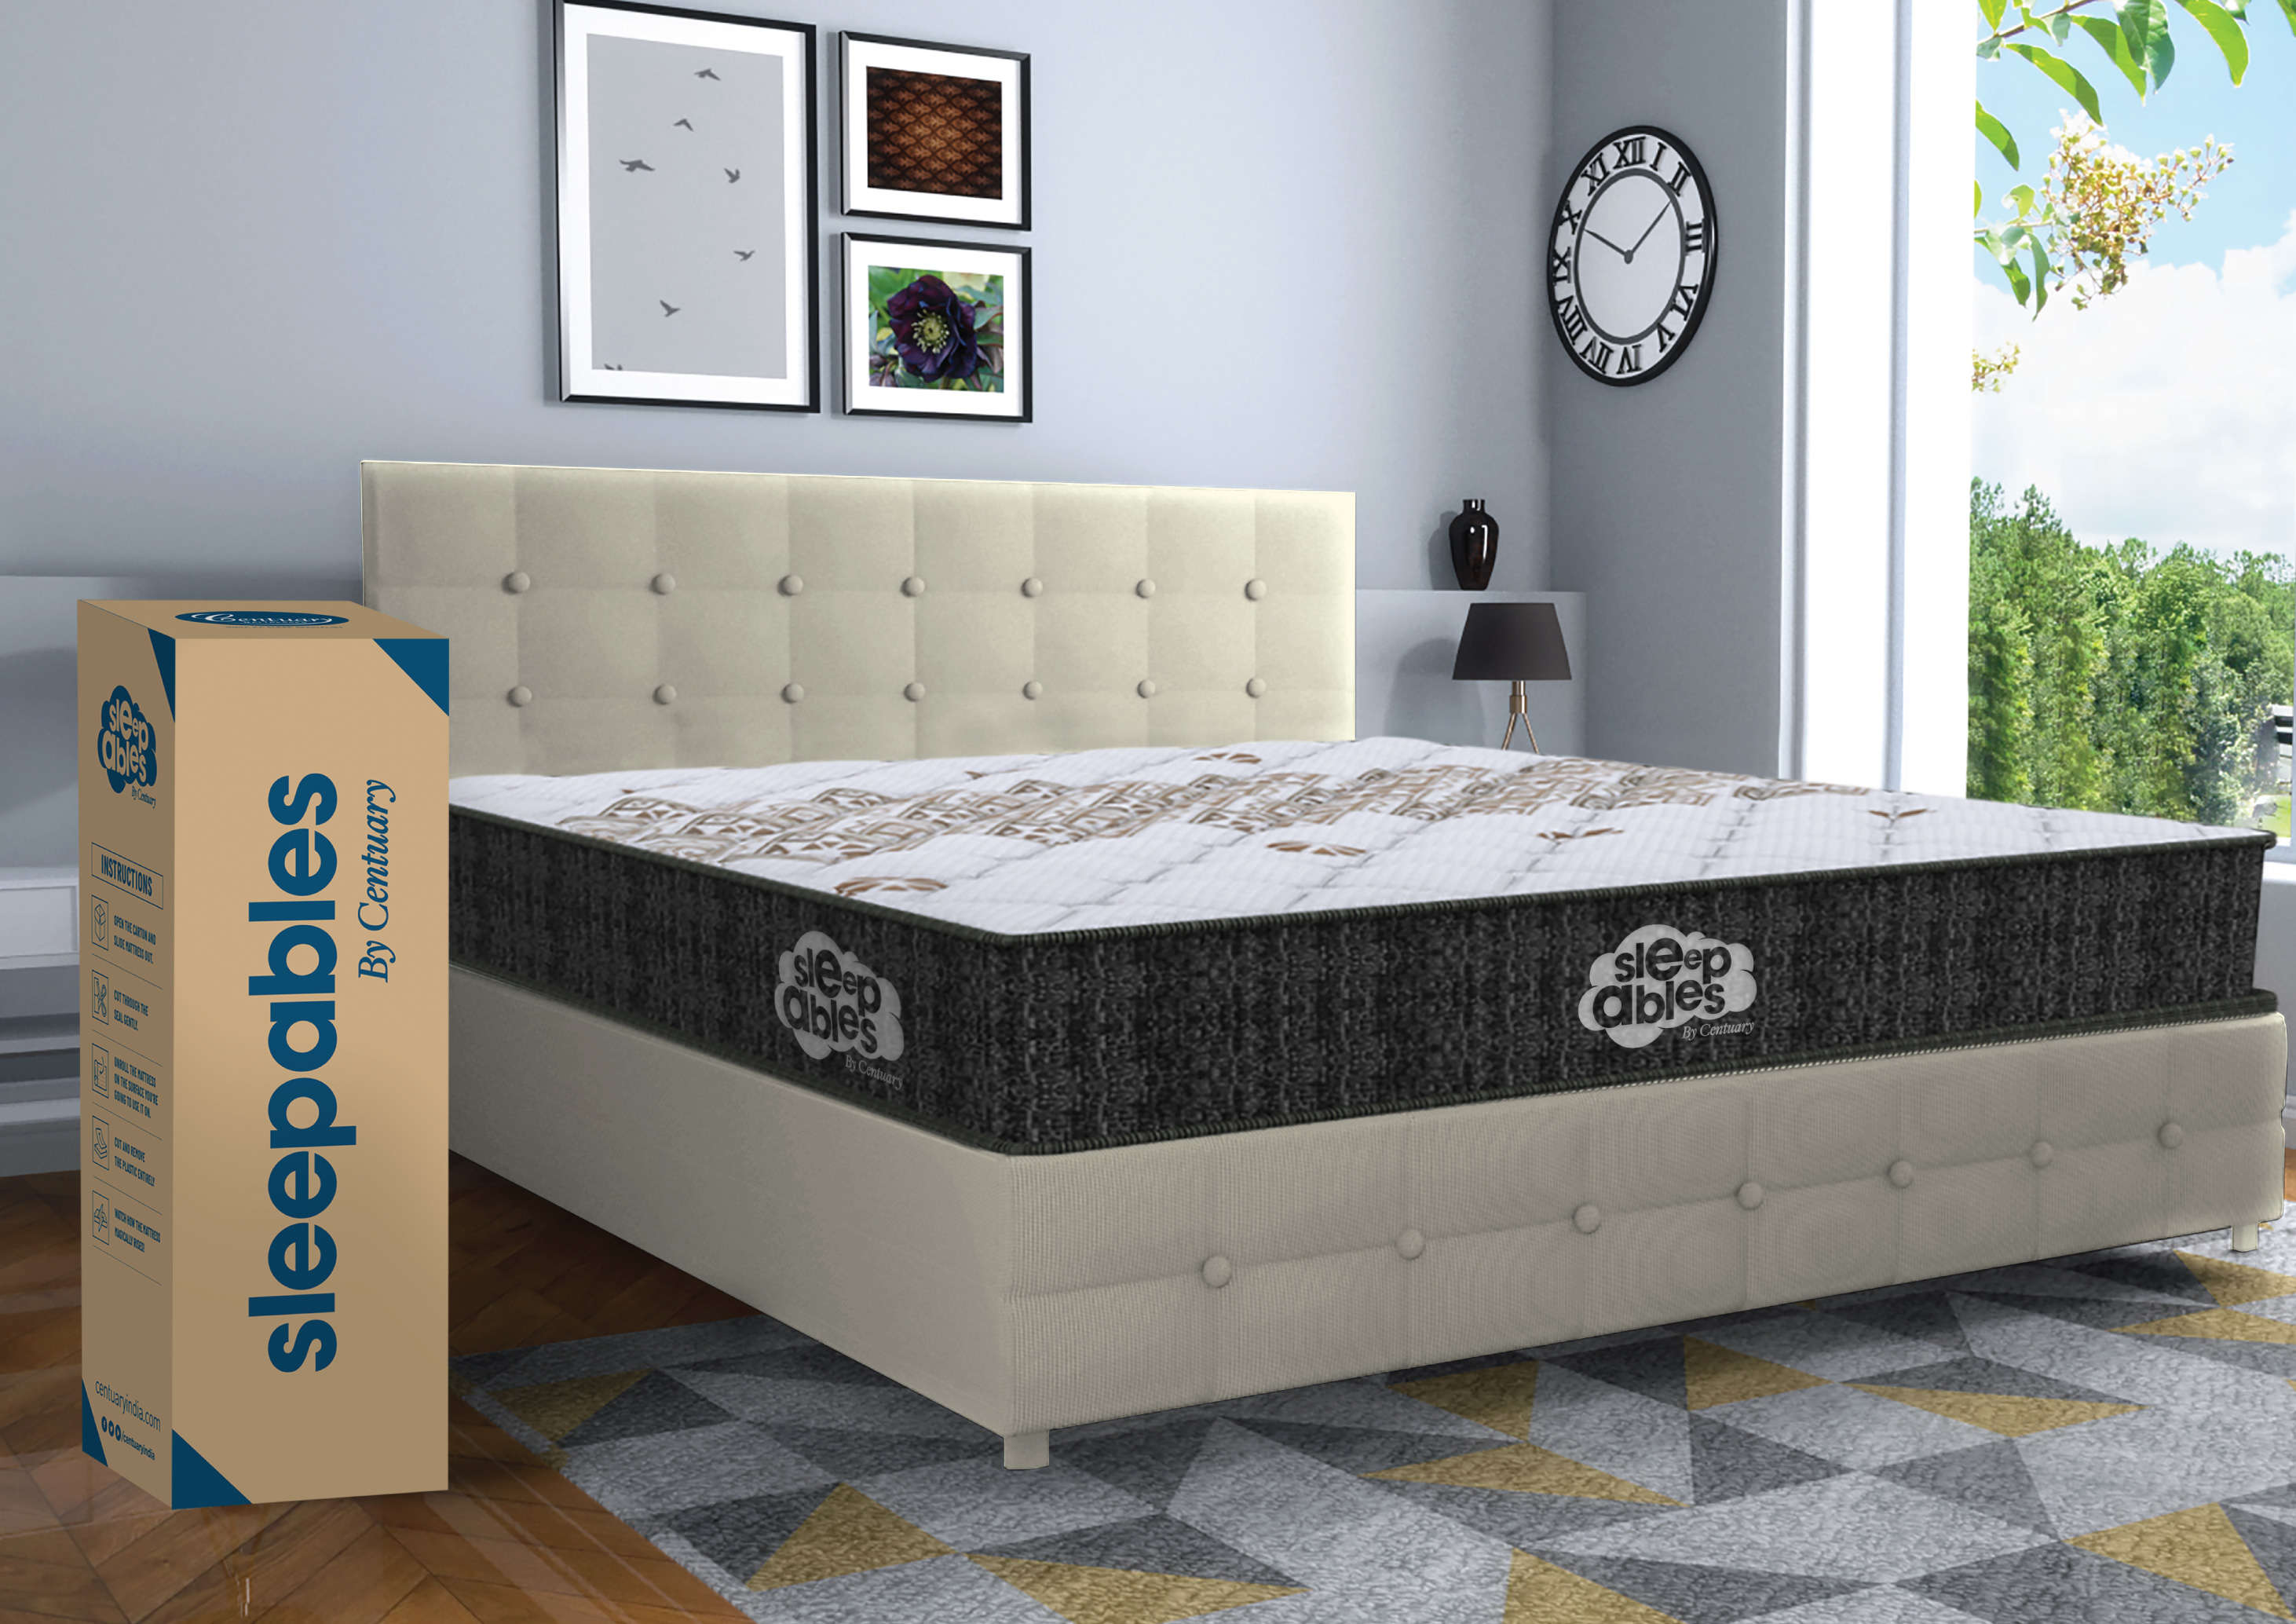 centuary mattress queen size